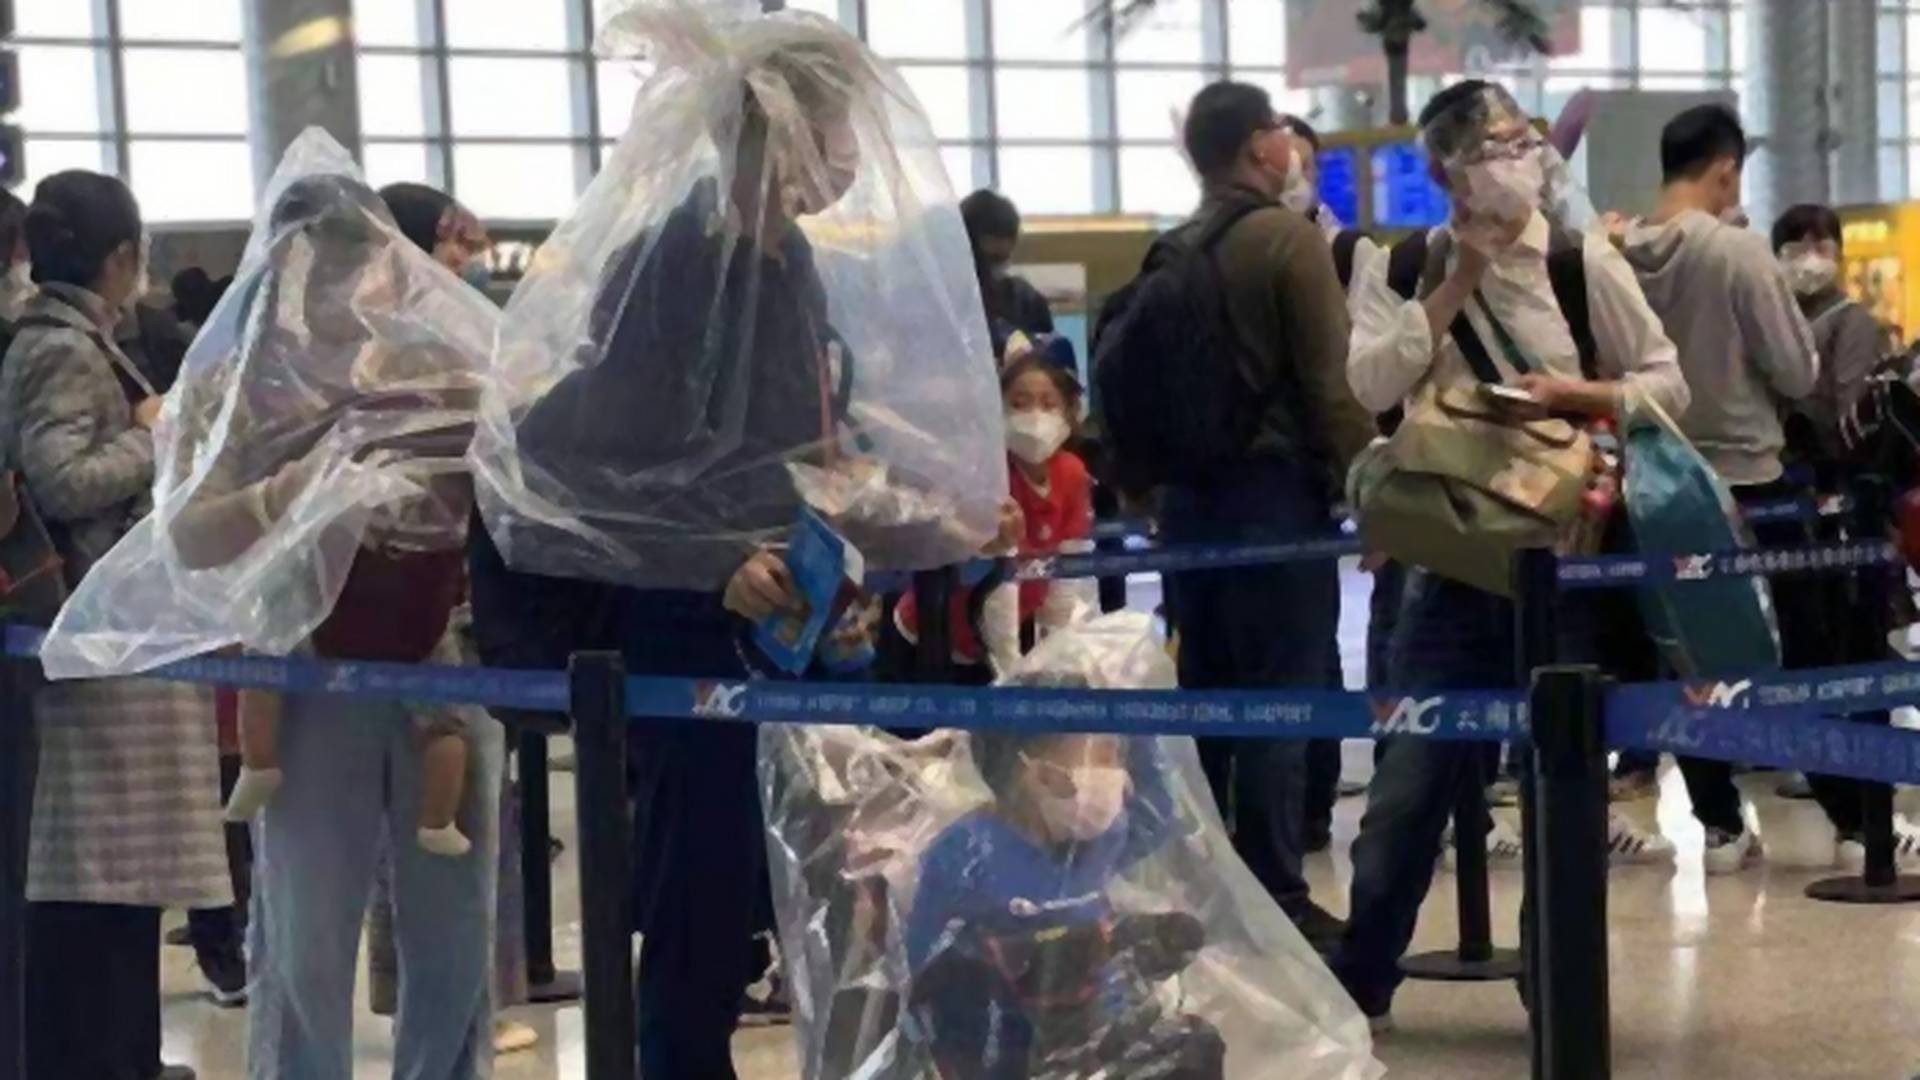 Bezacskózva, bukósisakban, műanyag palackkal a fejükön repülnek a kétségbeesett utasok a koronavírus miatt - Fotók